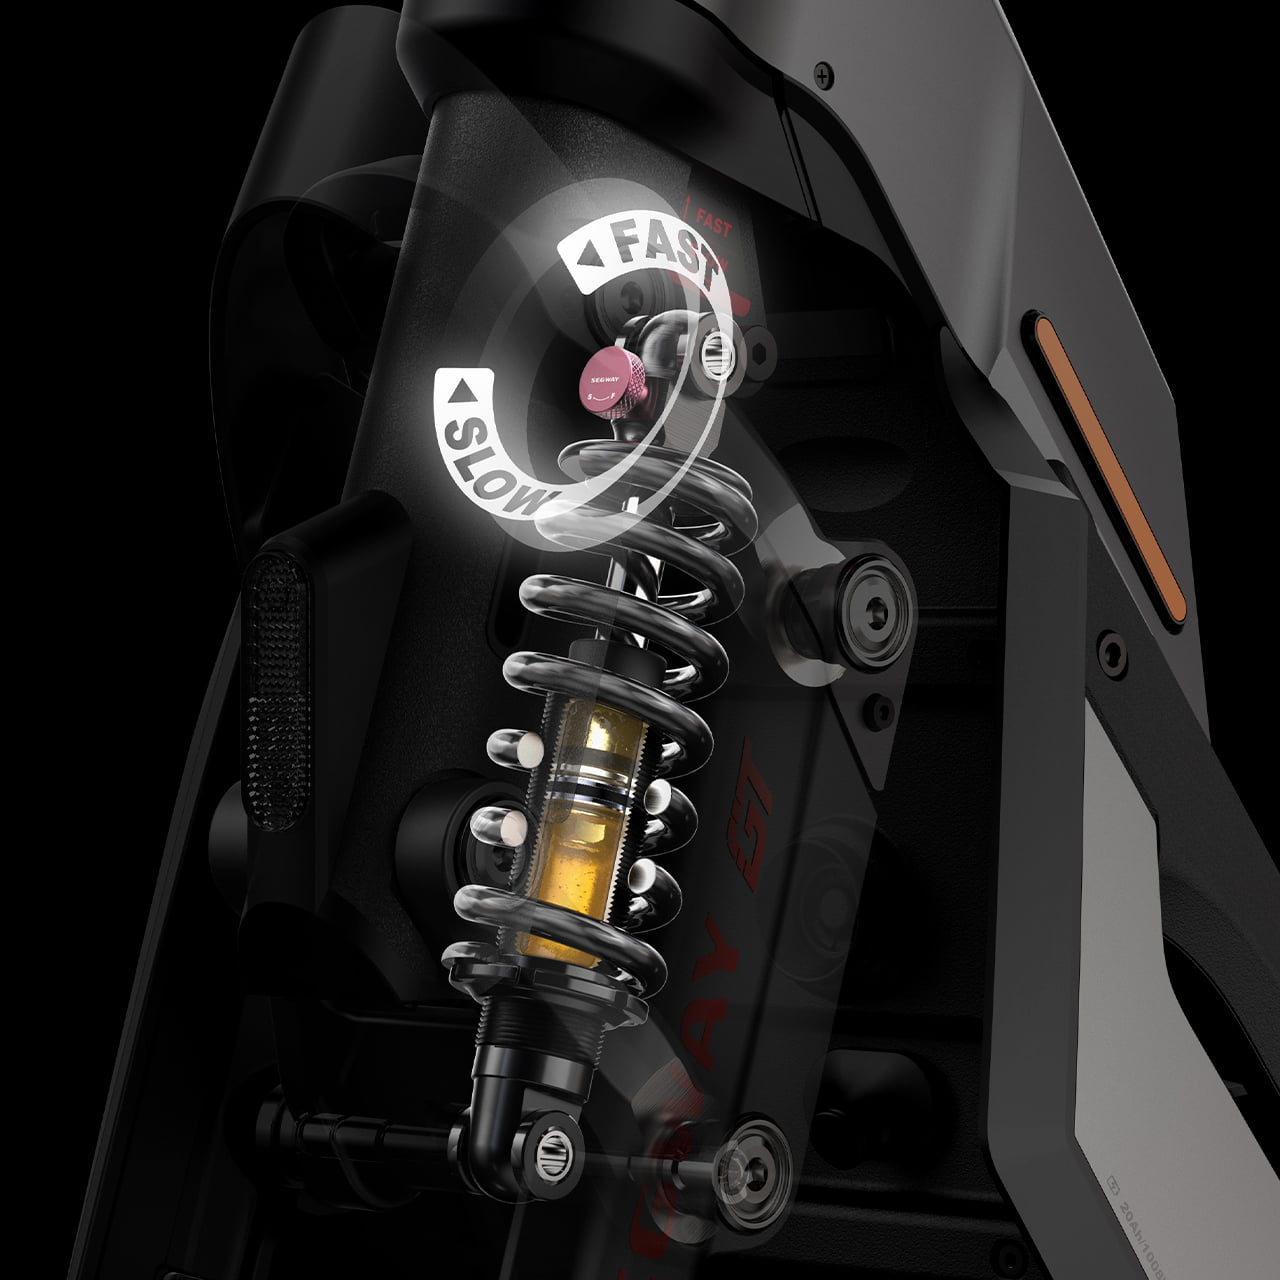 Спереди и сзади SuperScooter GT1 комплектуется гидравлическими амортизаторами с 15-ступенчатой регулировкой жёсткости